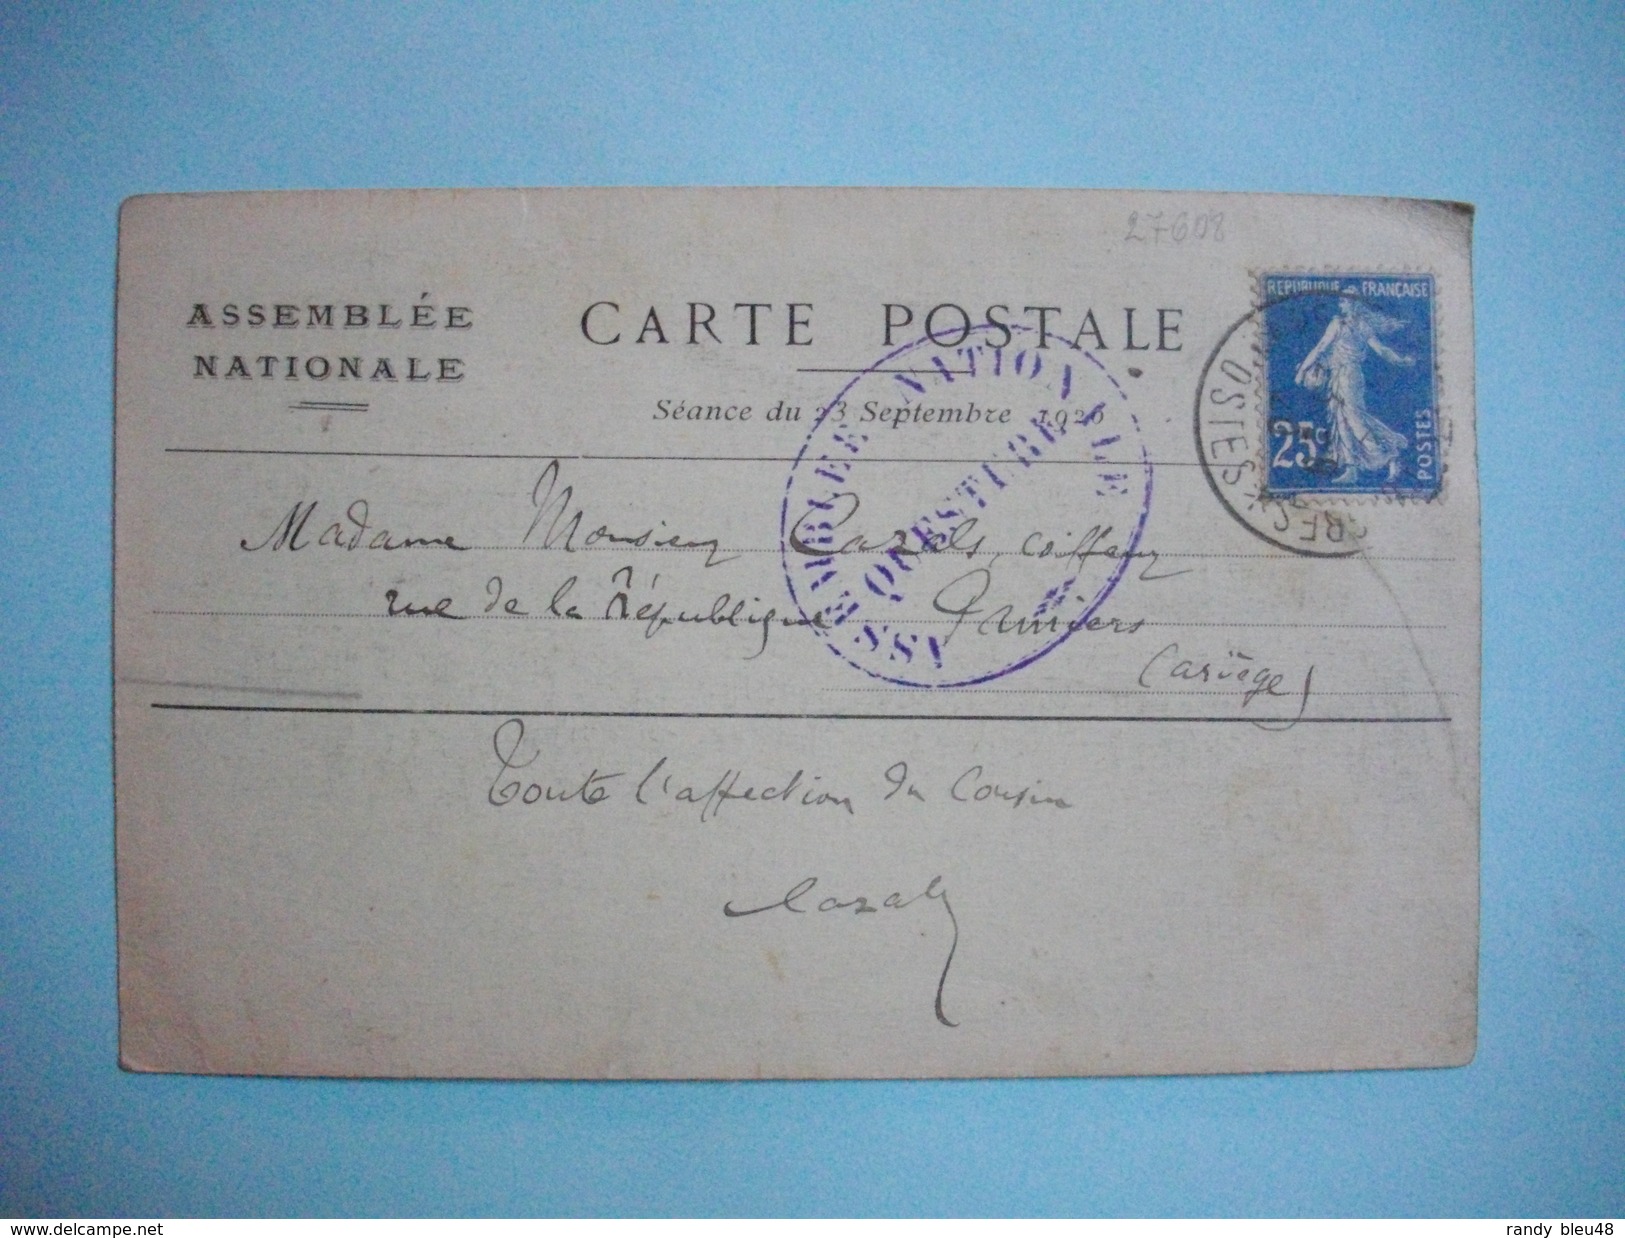 Palais De VERSAILLES  -  78  - MARCOPHILIE  -  Cachet ASSEMBLEE NATIONALE - Questure  -  1920- - Bolli Manuali